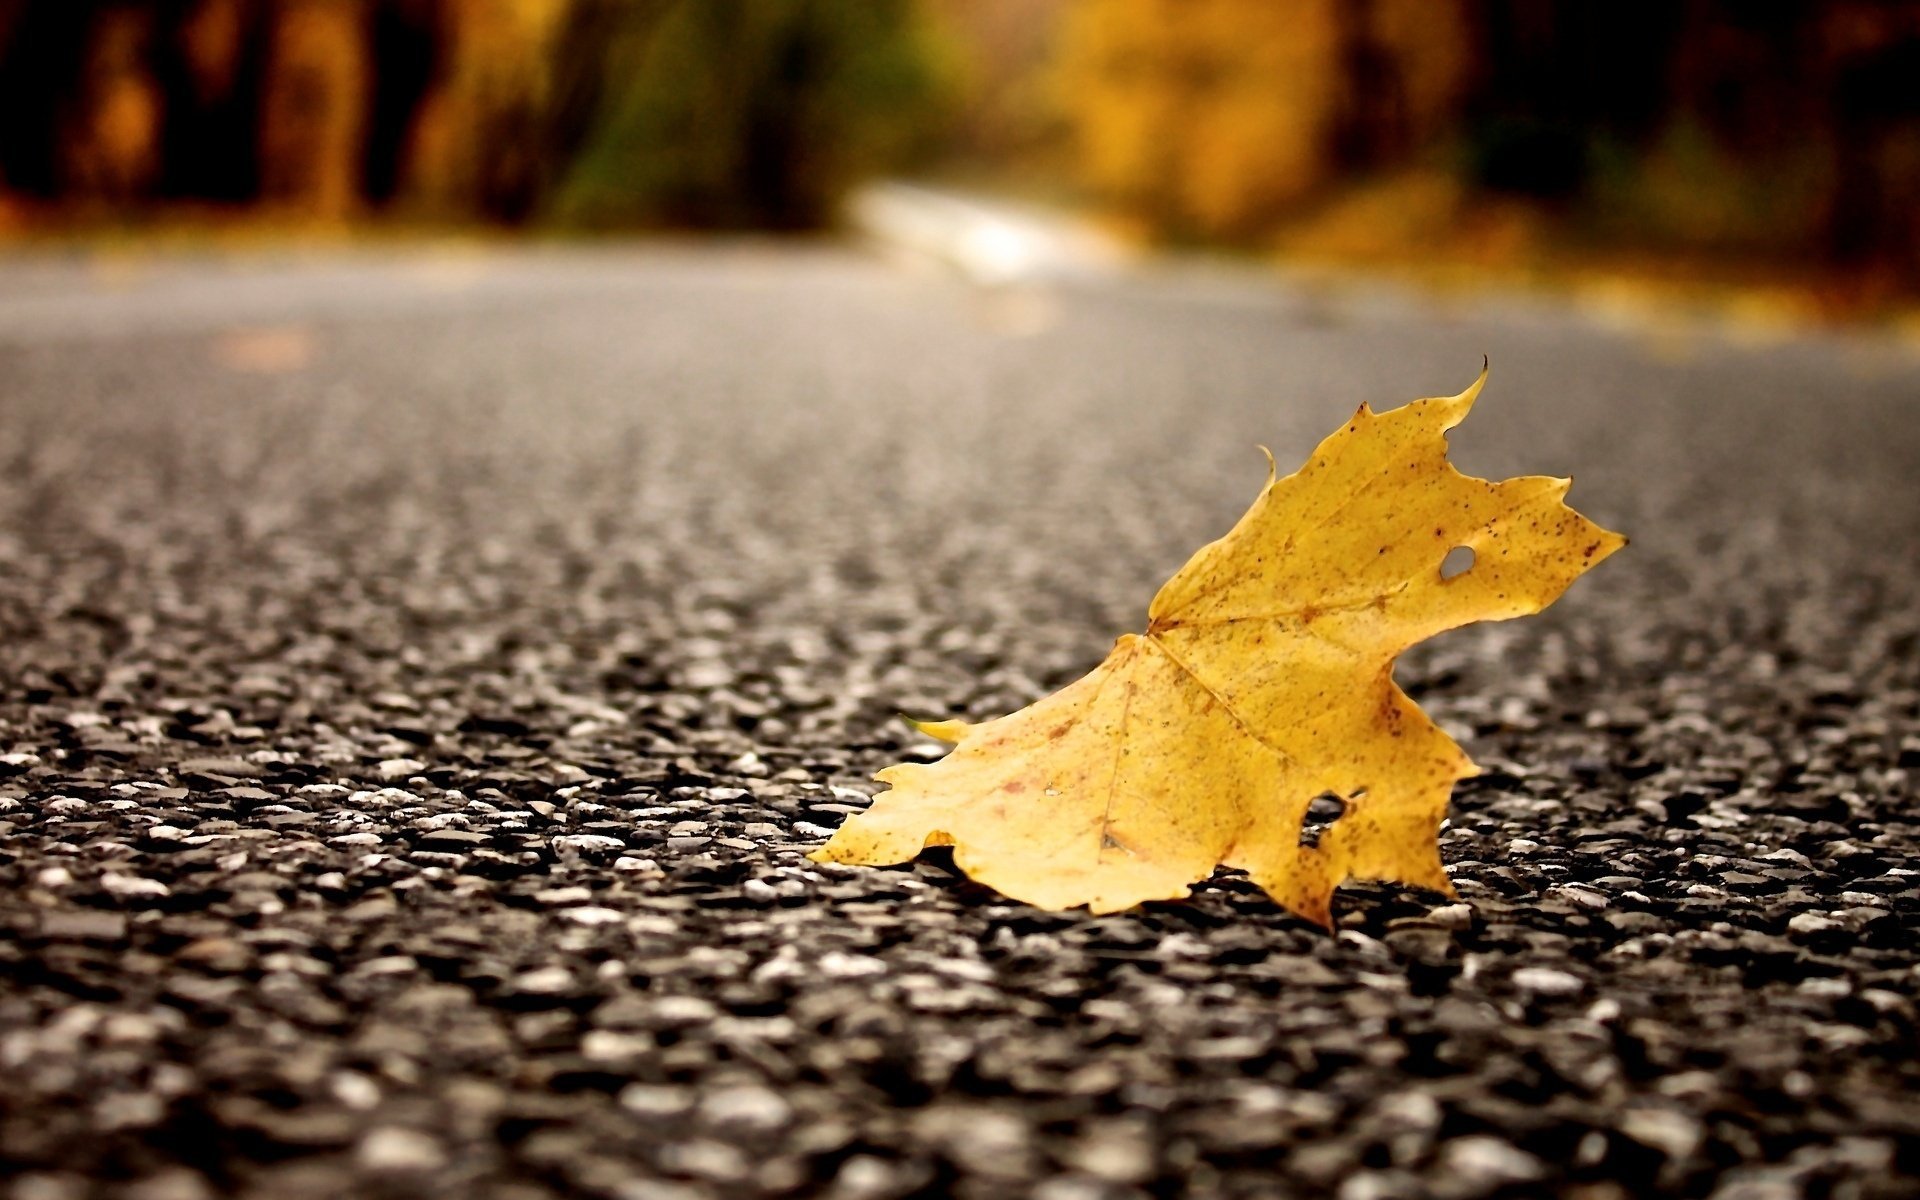 Macro view of a pine leaf on asphalt